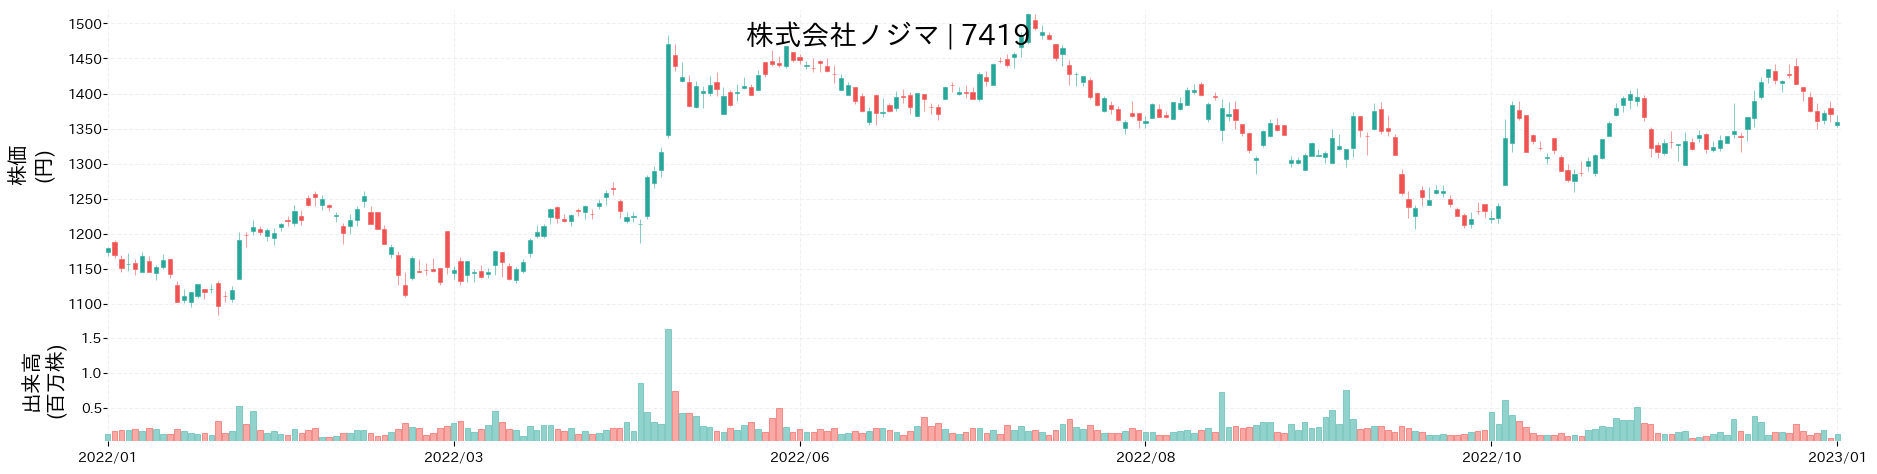 ノジマの株価推移(2022)